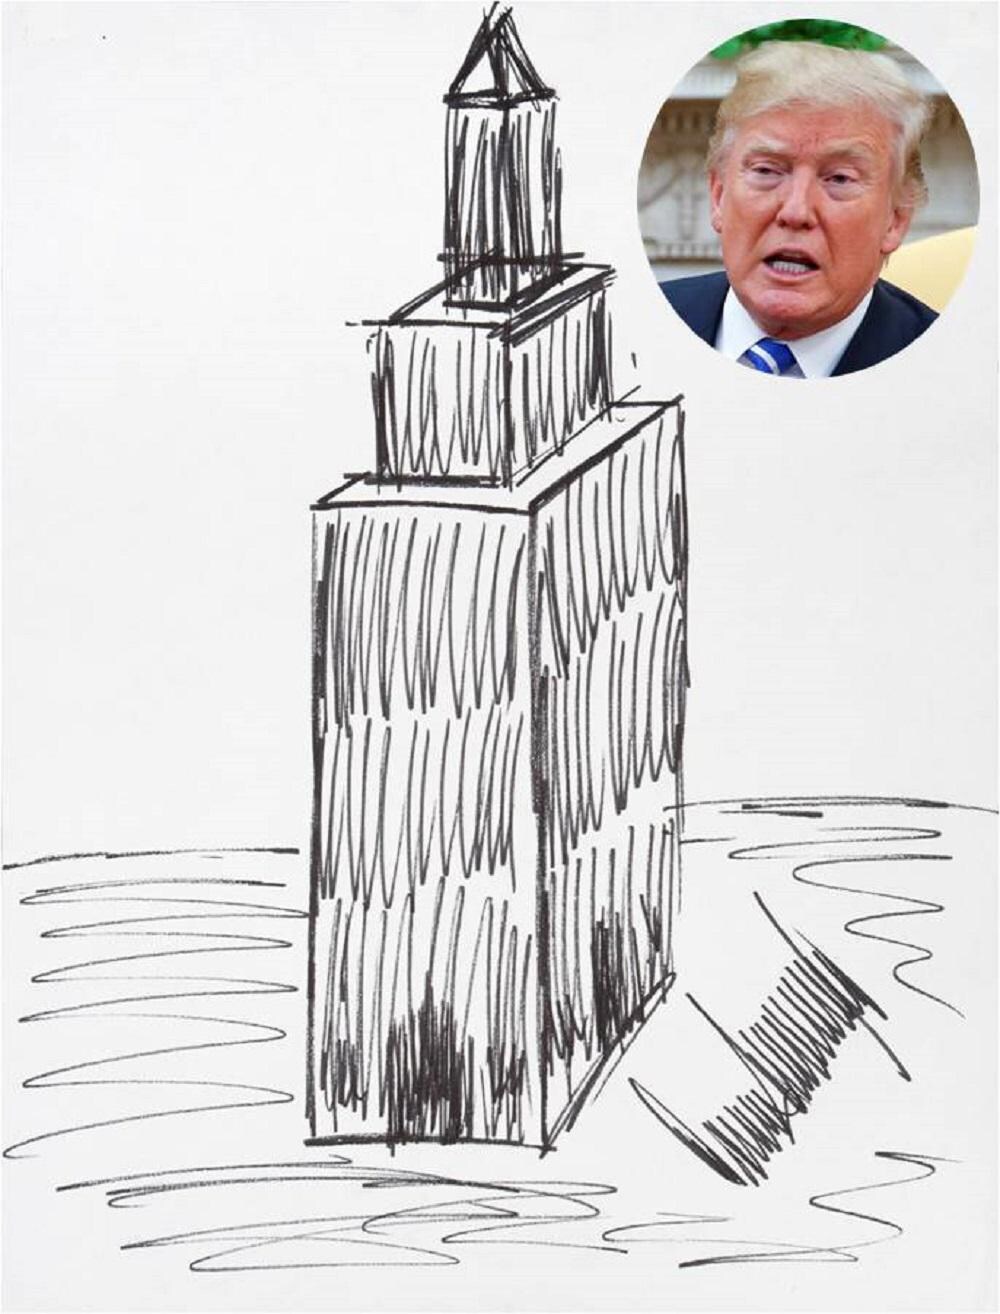 Vastgoedbons, president en nu blijkbaar ook kunstenaar: schets van Trump onder de hamer voor 16.000 dollar